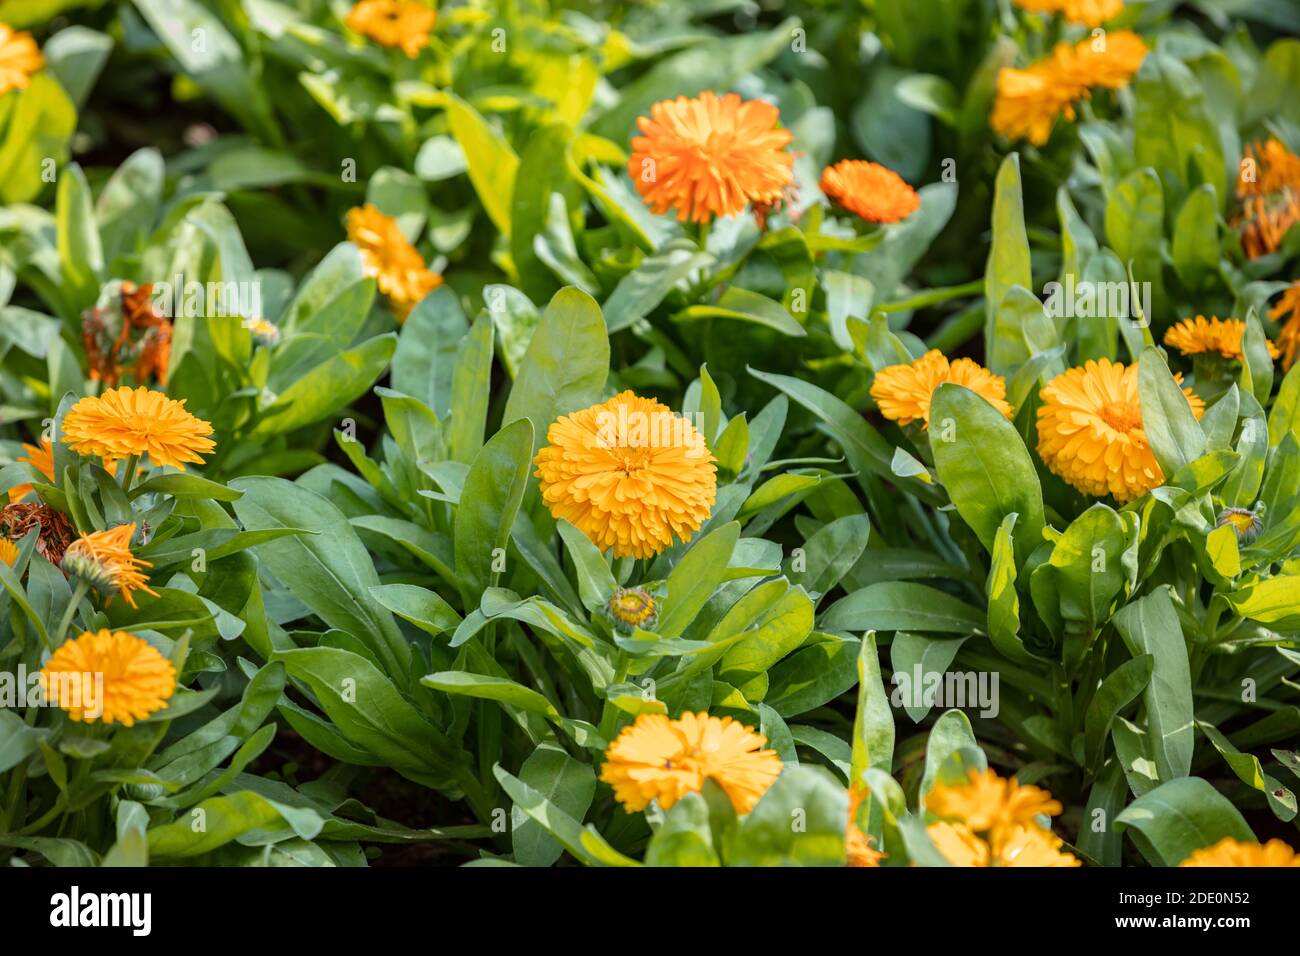 Ringelblume blühenden floralen Hintergrund. Orange gelbe Farbe Blüten, Ringelblume Kraut, natürliche Medizin. Stockfoto